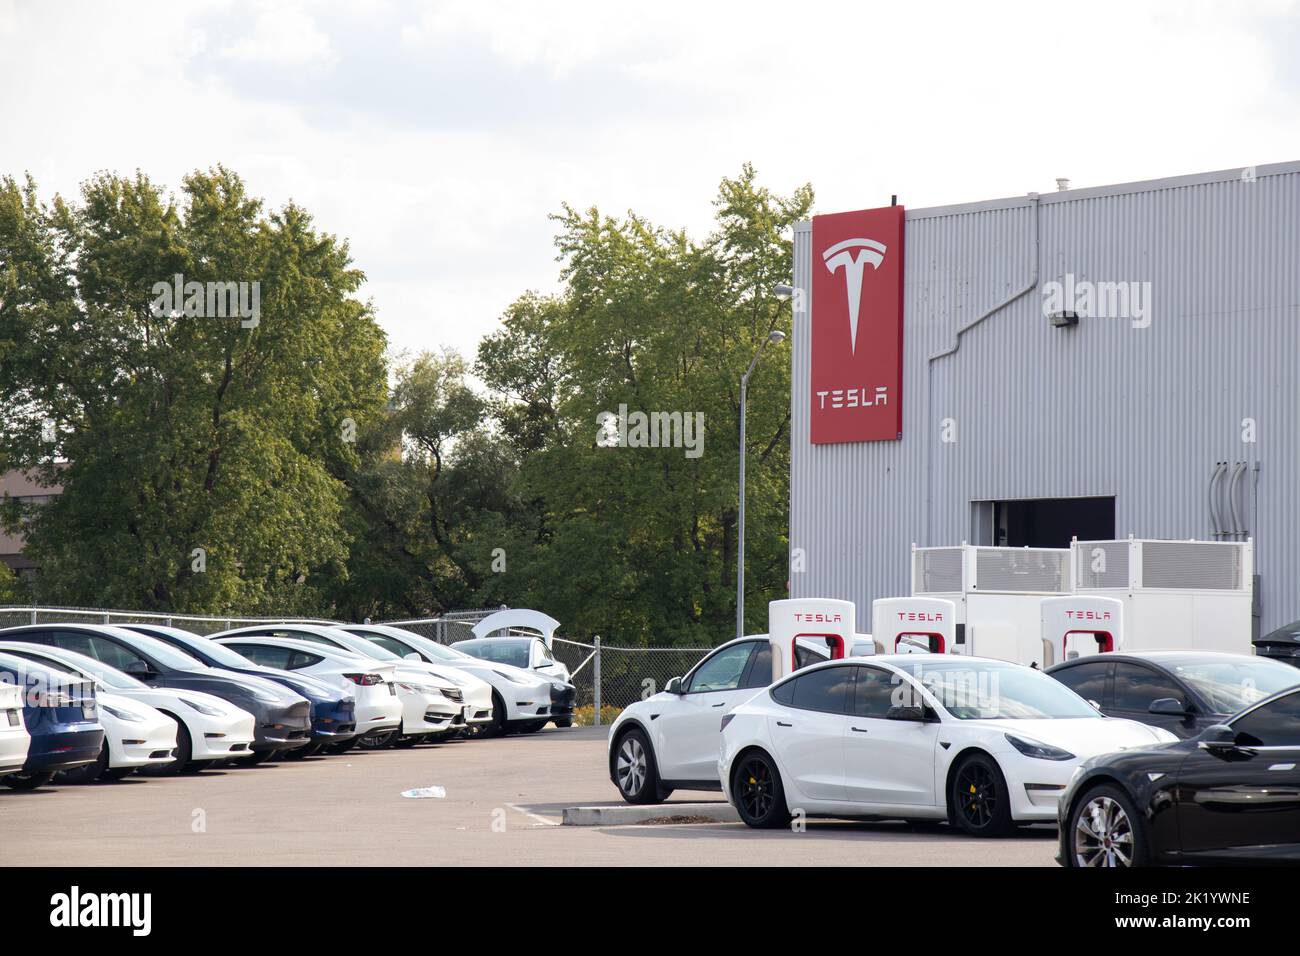 Il logo Tesla è visibile sul lato di una concessionaria Tesla e di una stazione di ricarica Supercharger, piena di auto in carica e di veicoli nuovi nel parcheggio. Foto Stock